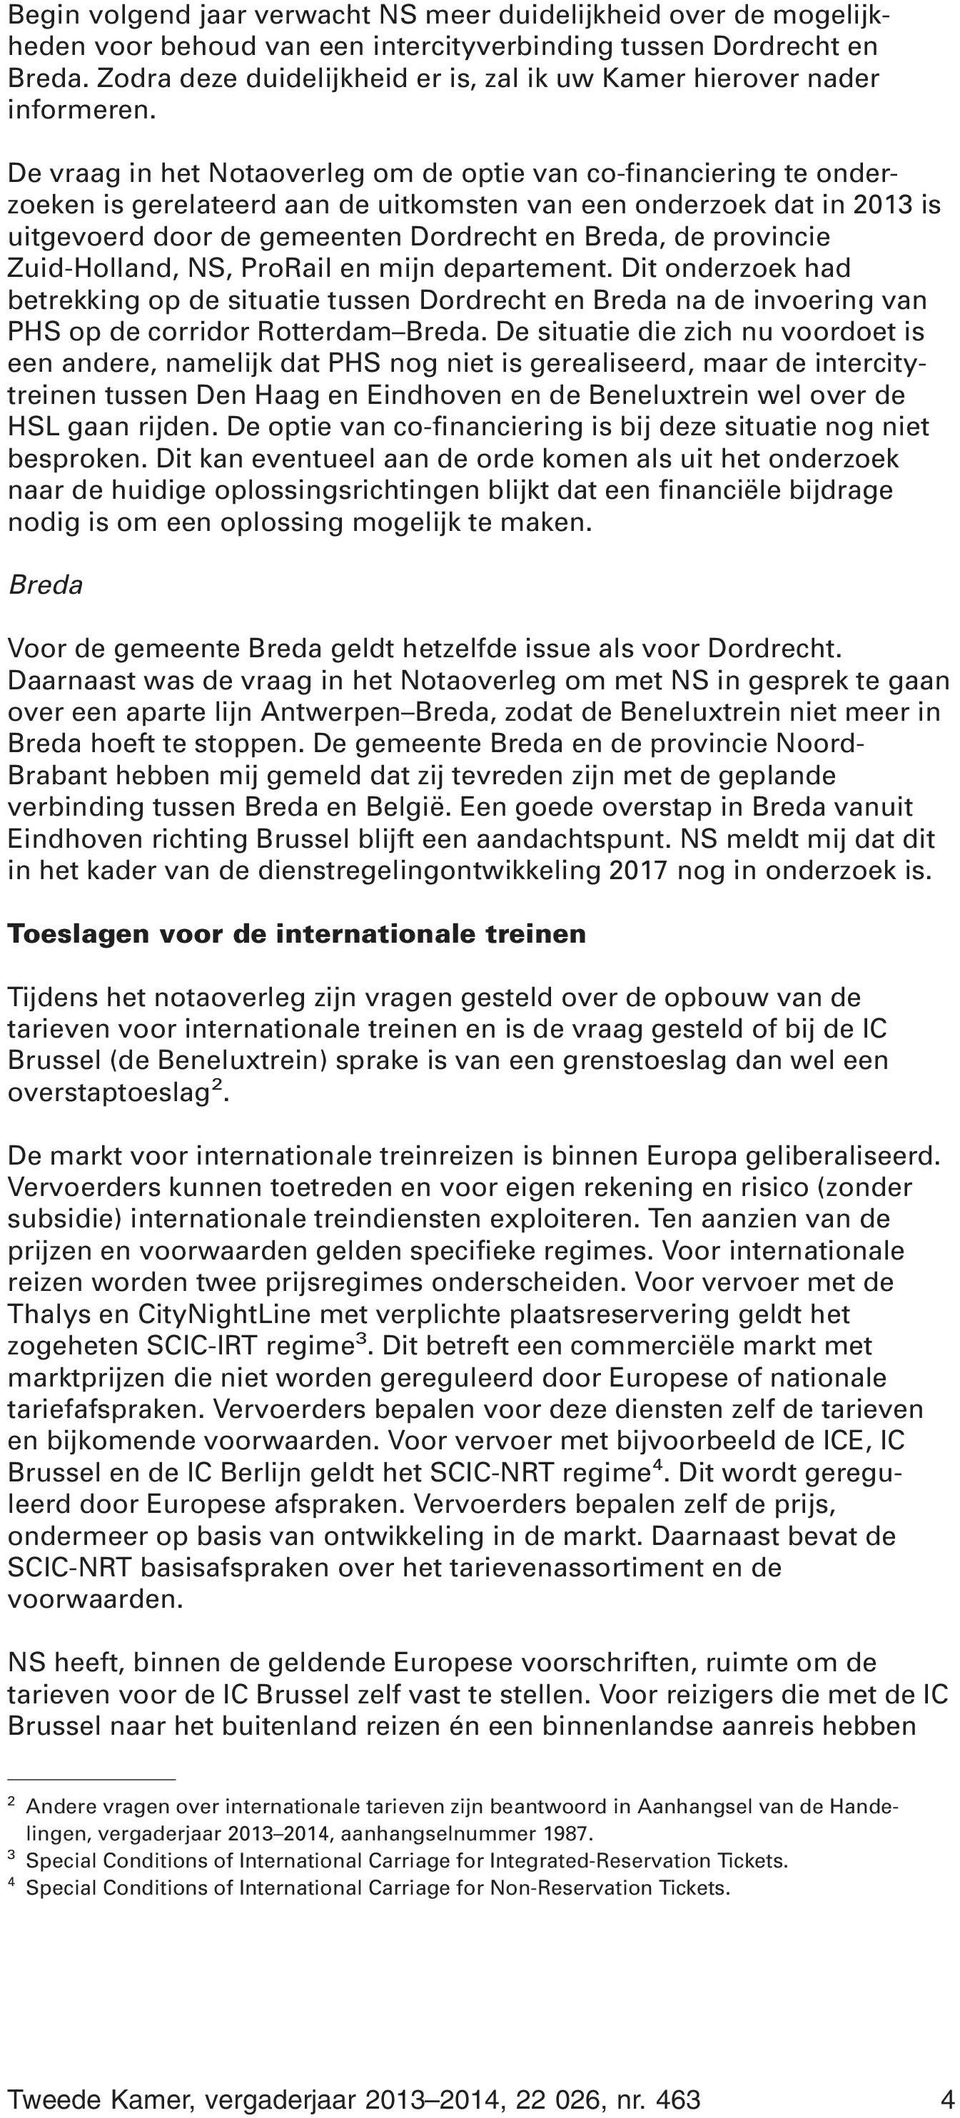 De vraag in het Notaoverleg om de optie van co-financiering te onderzoeken is gerelateerd aan de uitkomsten van een onderzoek dat in 2013 is uitgevoerd door de gemeenten Dordrecht en Breda, de